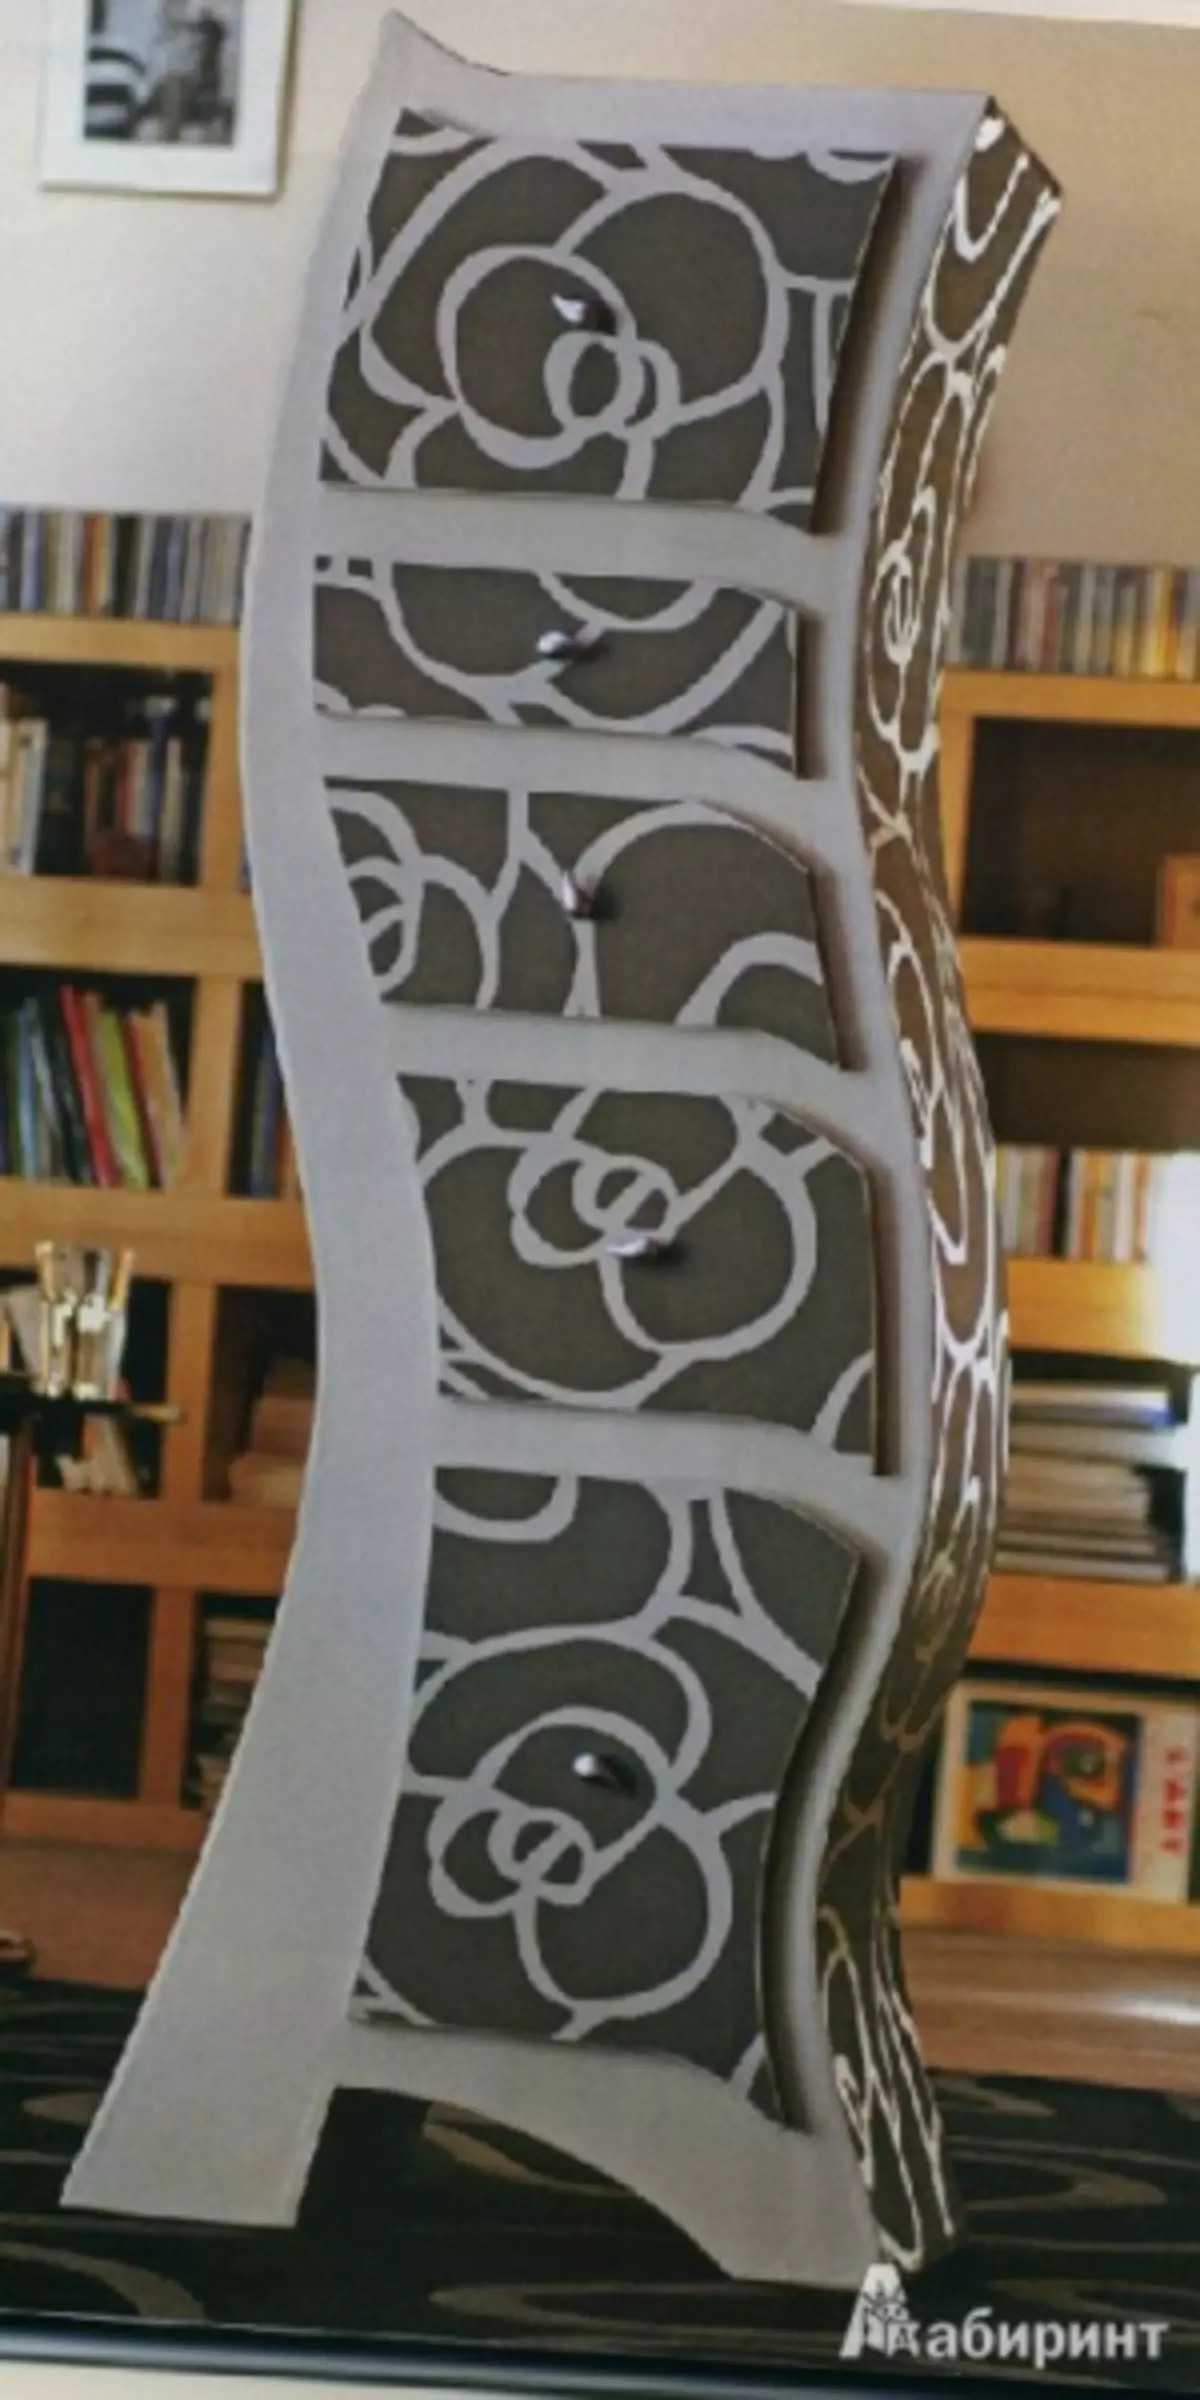 డ్రాయింగులతో వారి స్వంత చేతులతో కార్డ్బోర్డ్ నుండి డ్రస్సర్: MK తో ఫోటోలు మరియు వీడియో